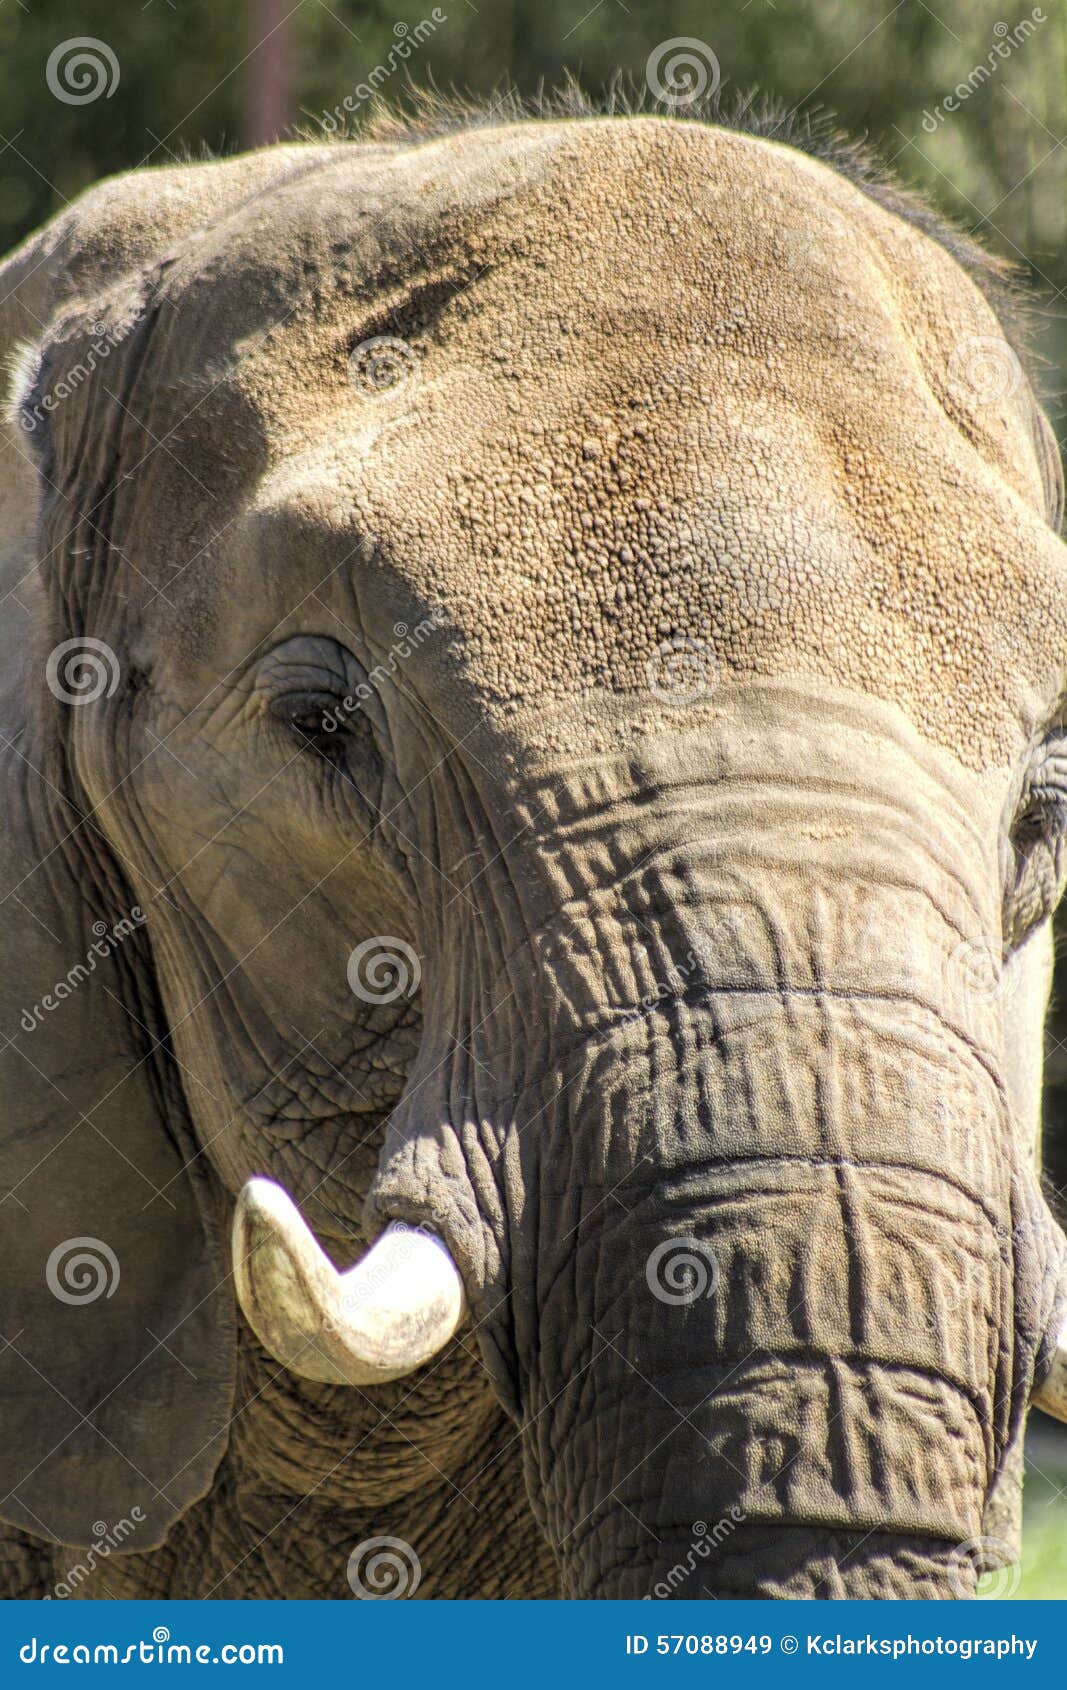 Azjatycki Pachyderm słonia zbliżenie 2. Azjatycki słoń, Elephas maximus z wielkimi kłami